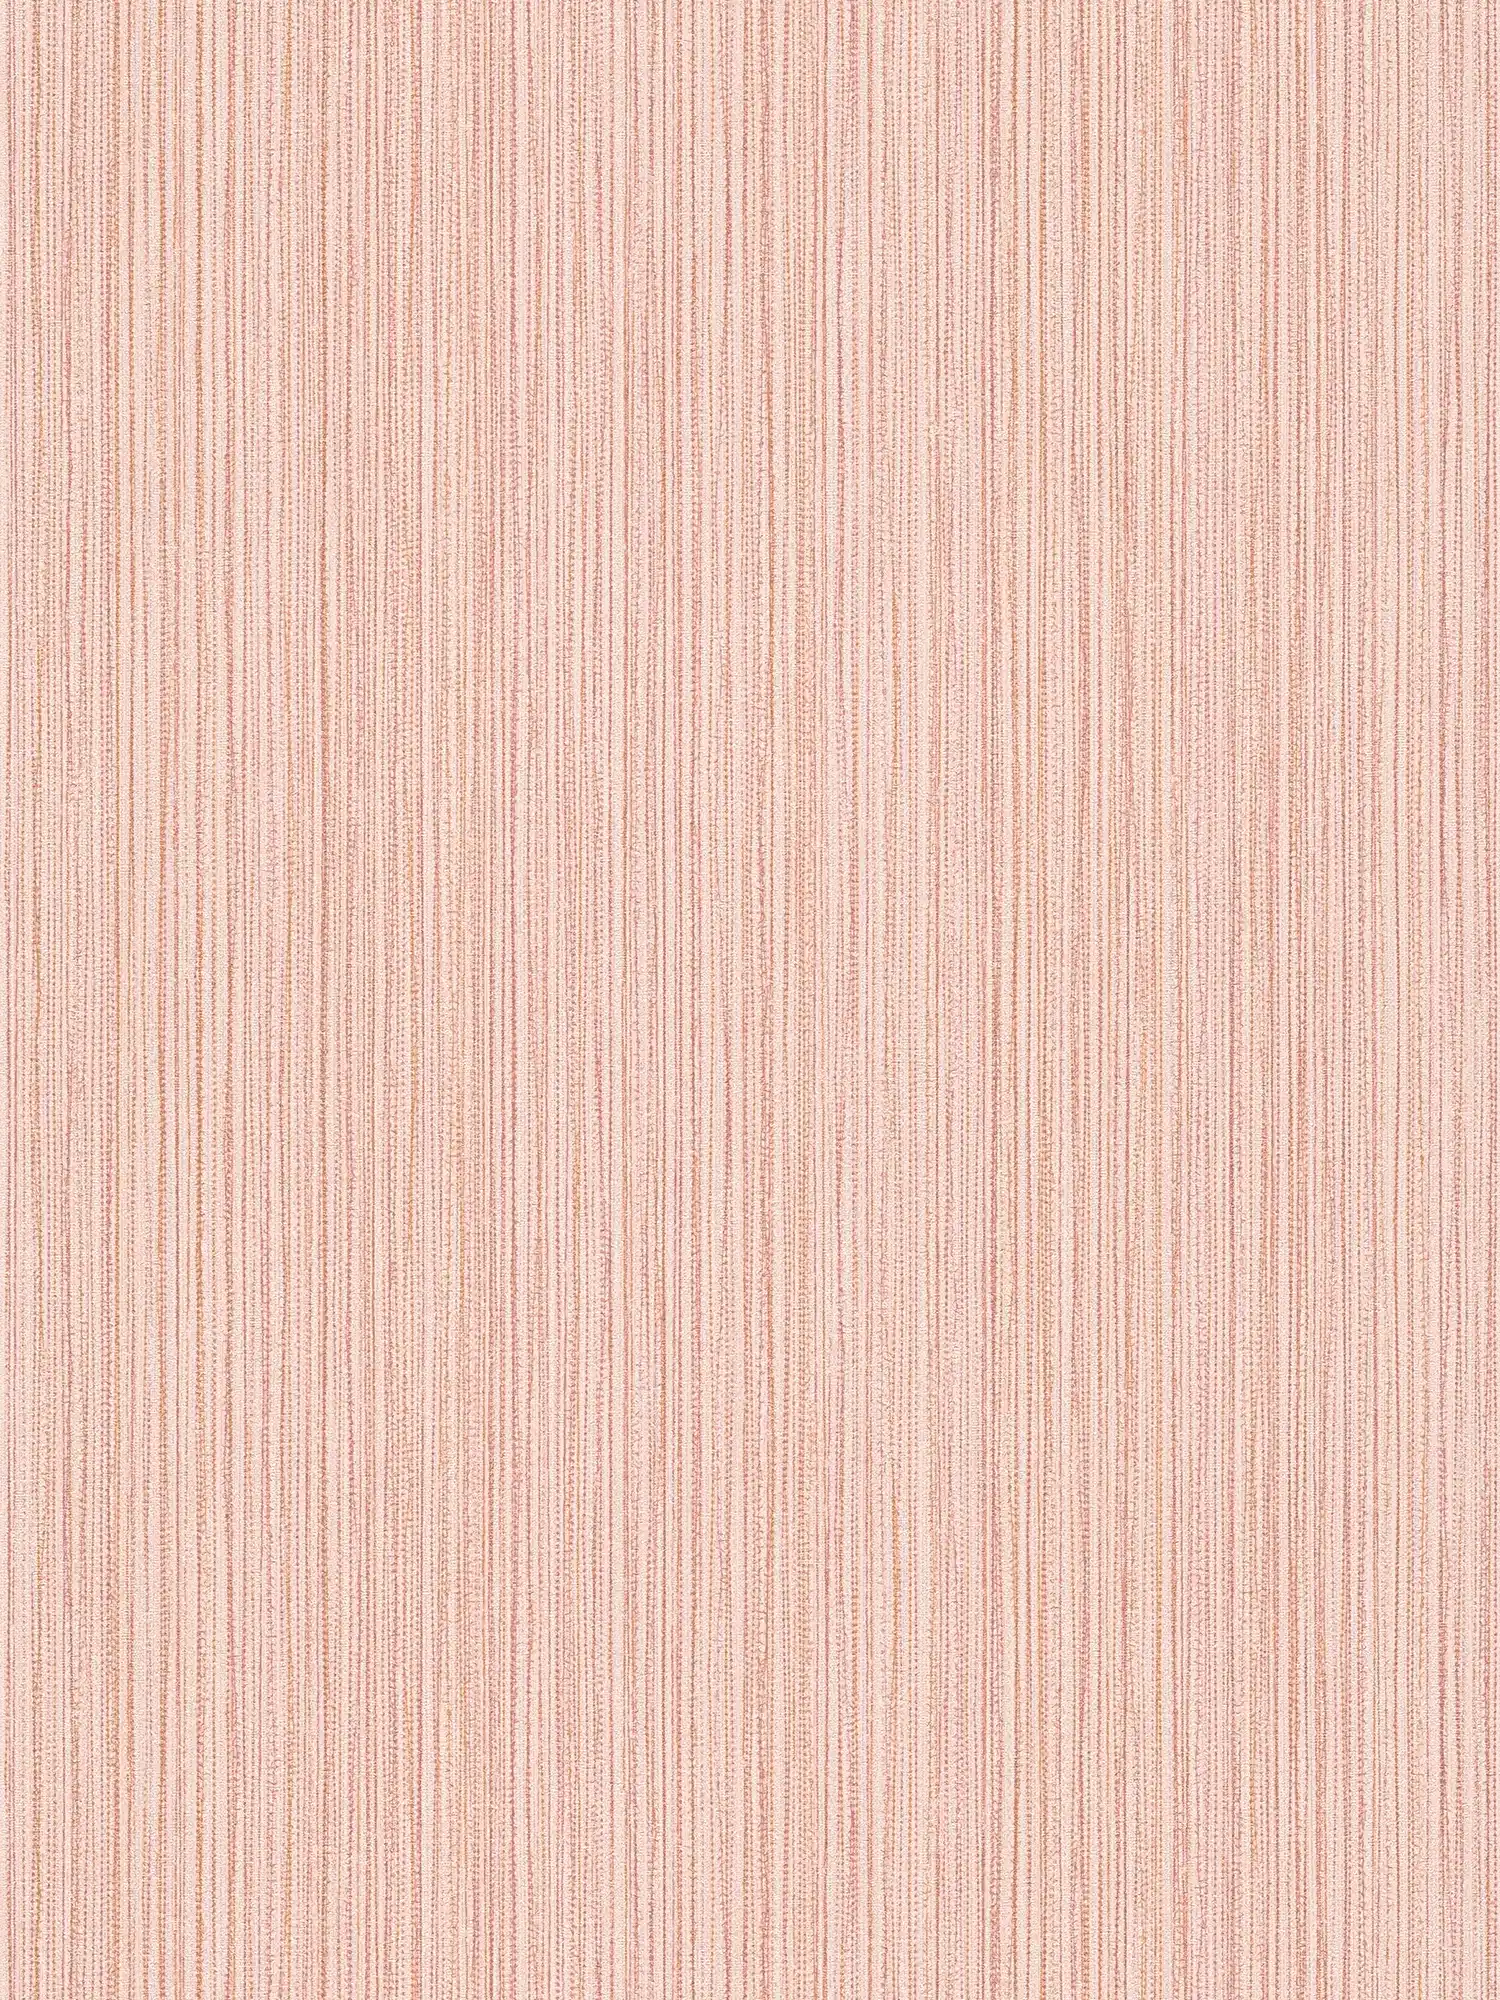 Papel pintado rosa no tejido con brillo metálico - rosa
